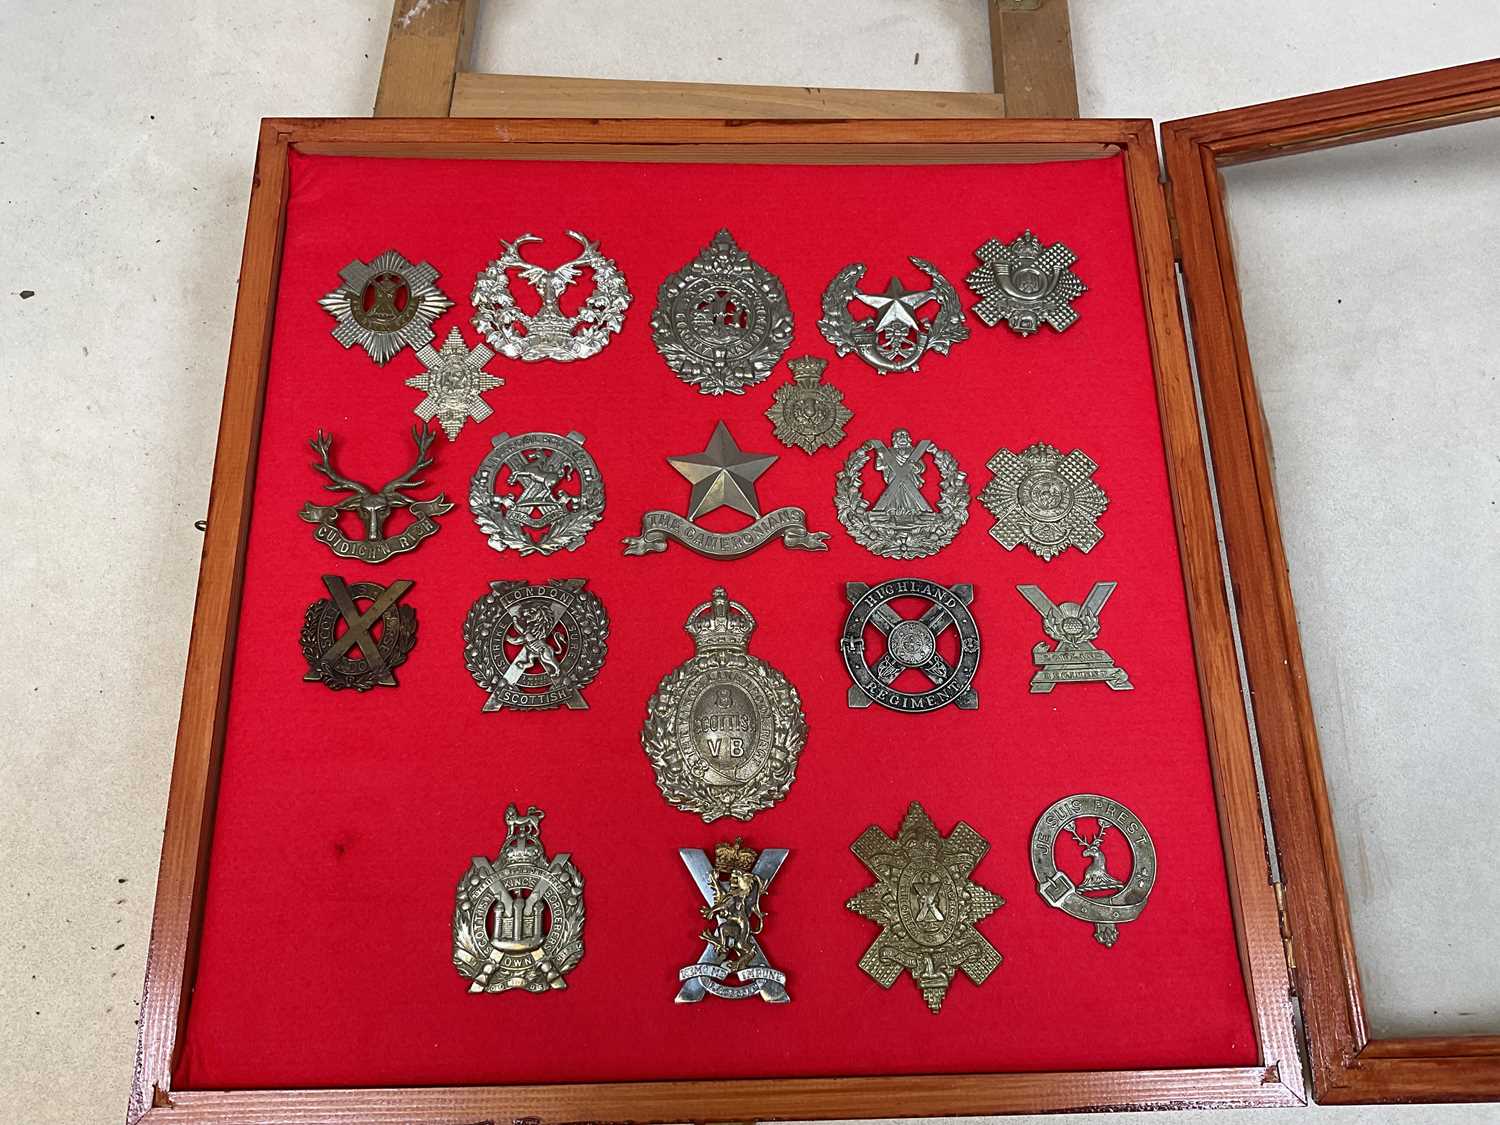 A framed and glazed display of Scottish regiment cap badges, including Highland Regiment, The - Image 8 of 8